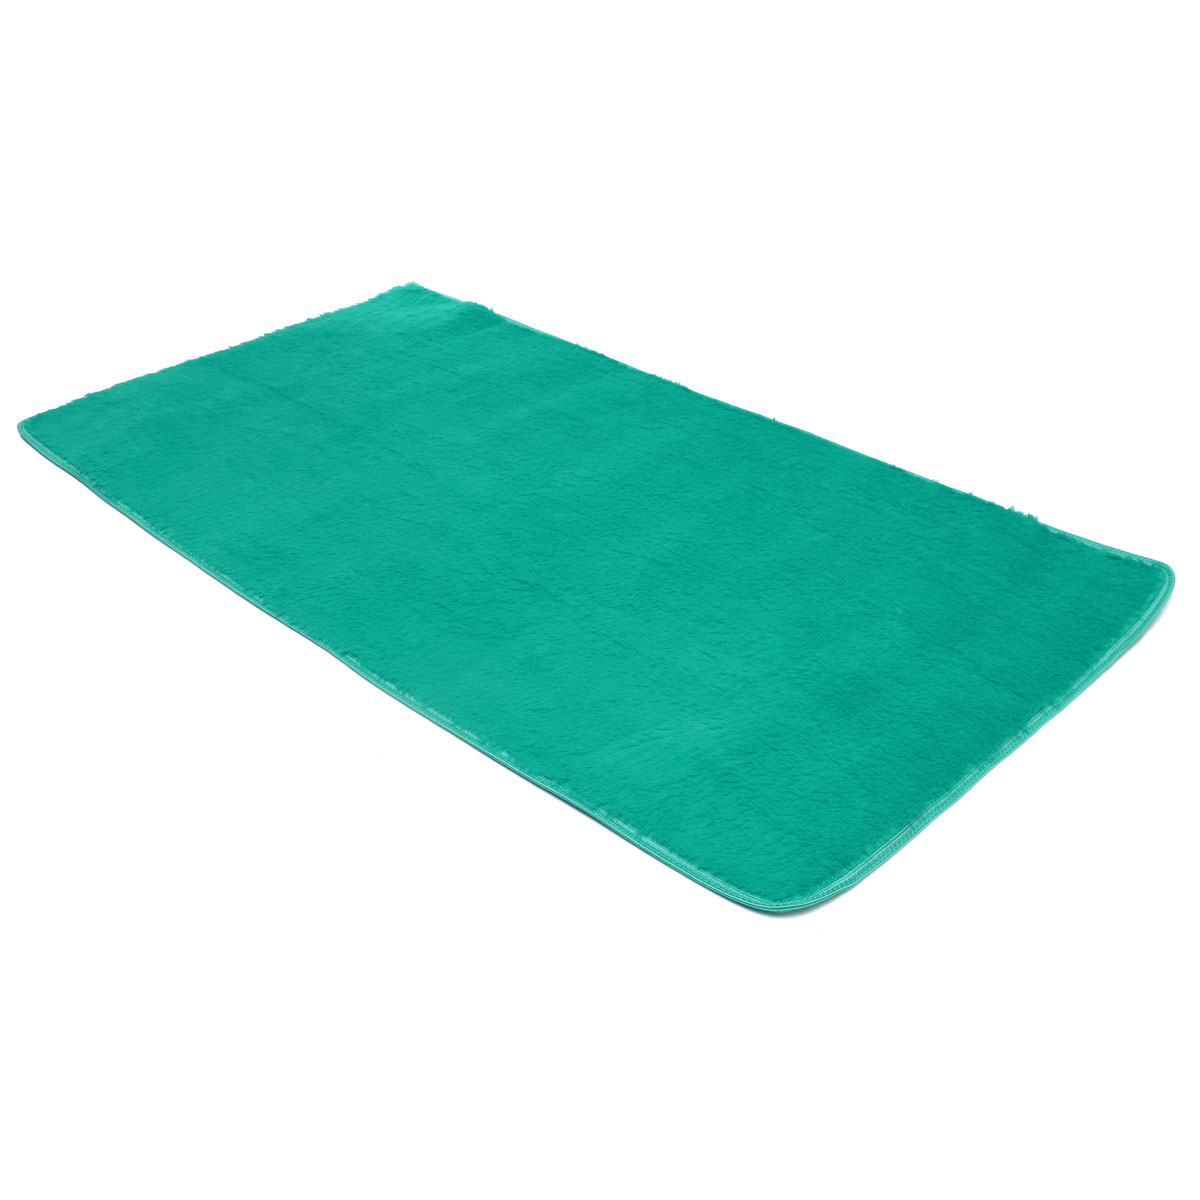 90x160cm Bedroom Fluffy Floor Mat Soft Shaggy Blanket Non Slip Living Room Rug